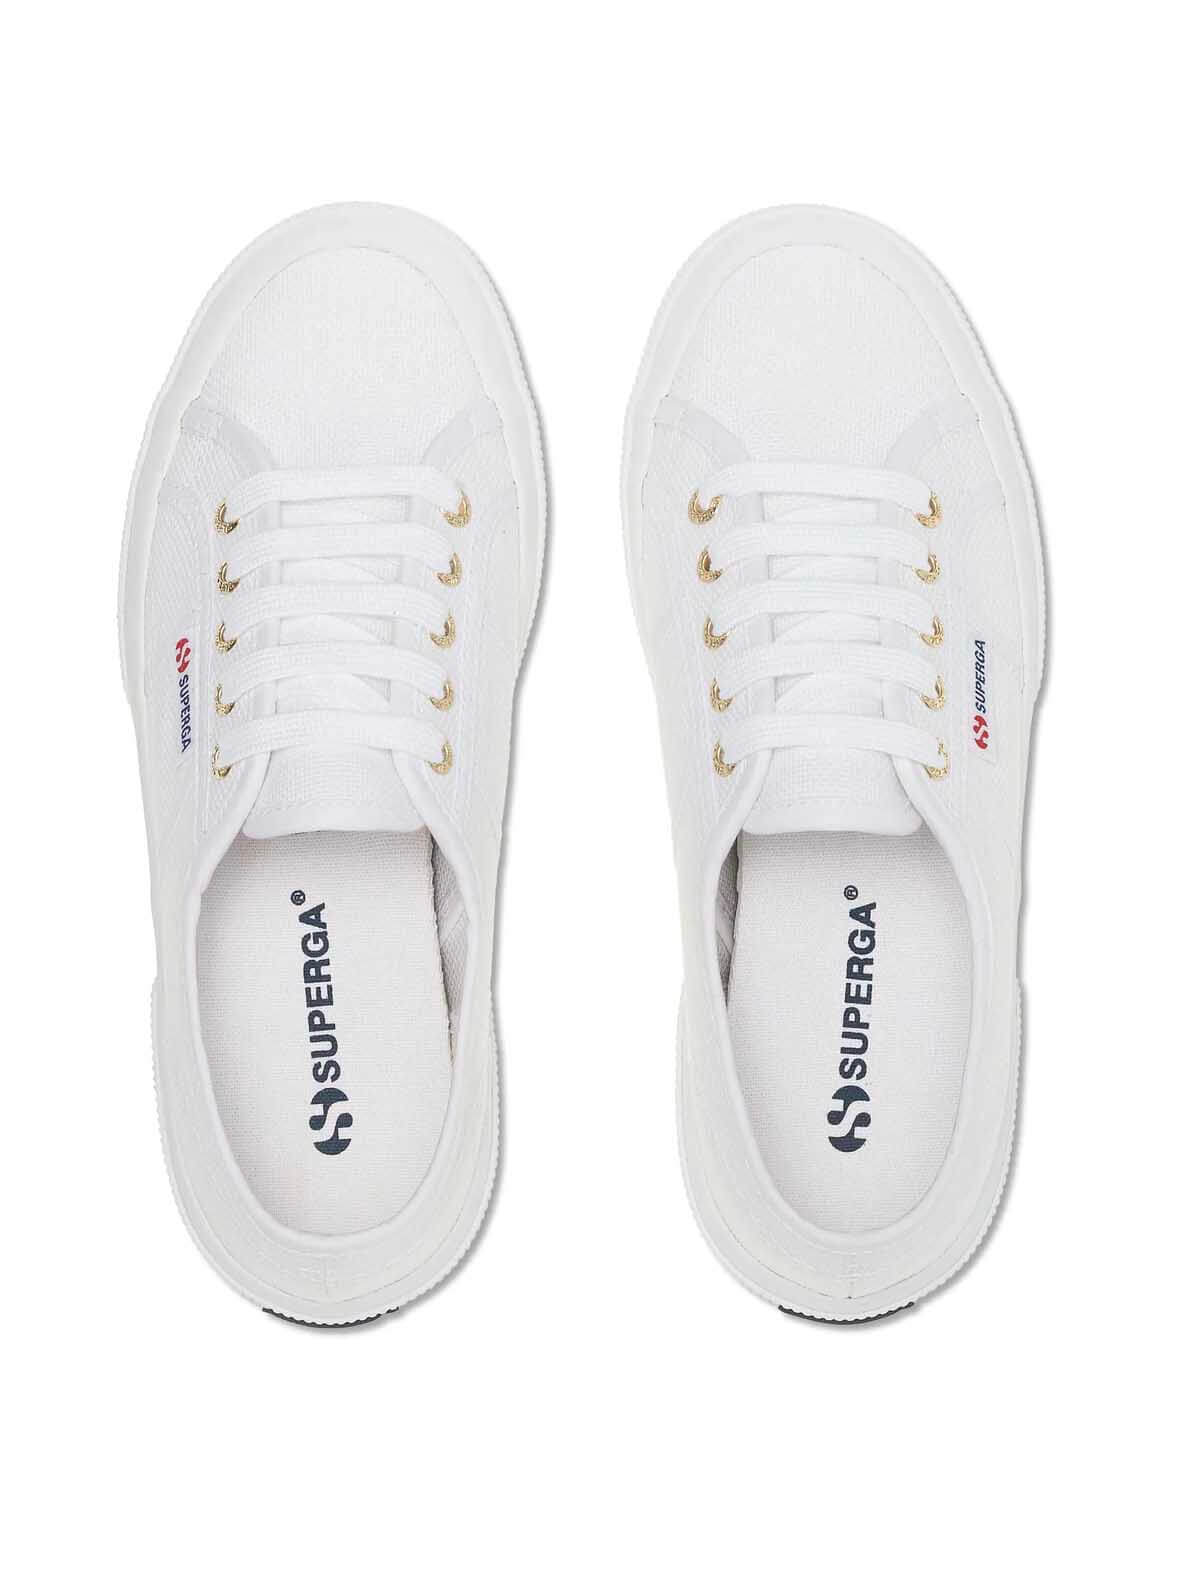 Superga 2750 Cotu Classic Sneaker in White Pale Gold 8033562274574